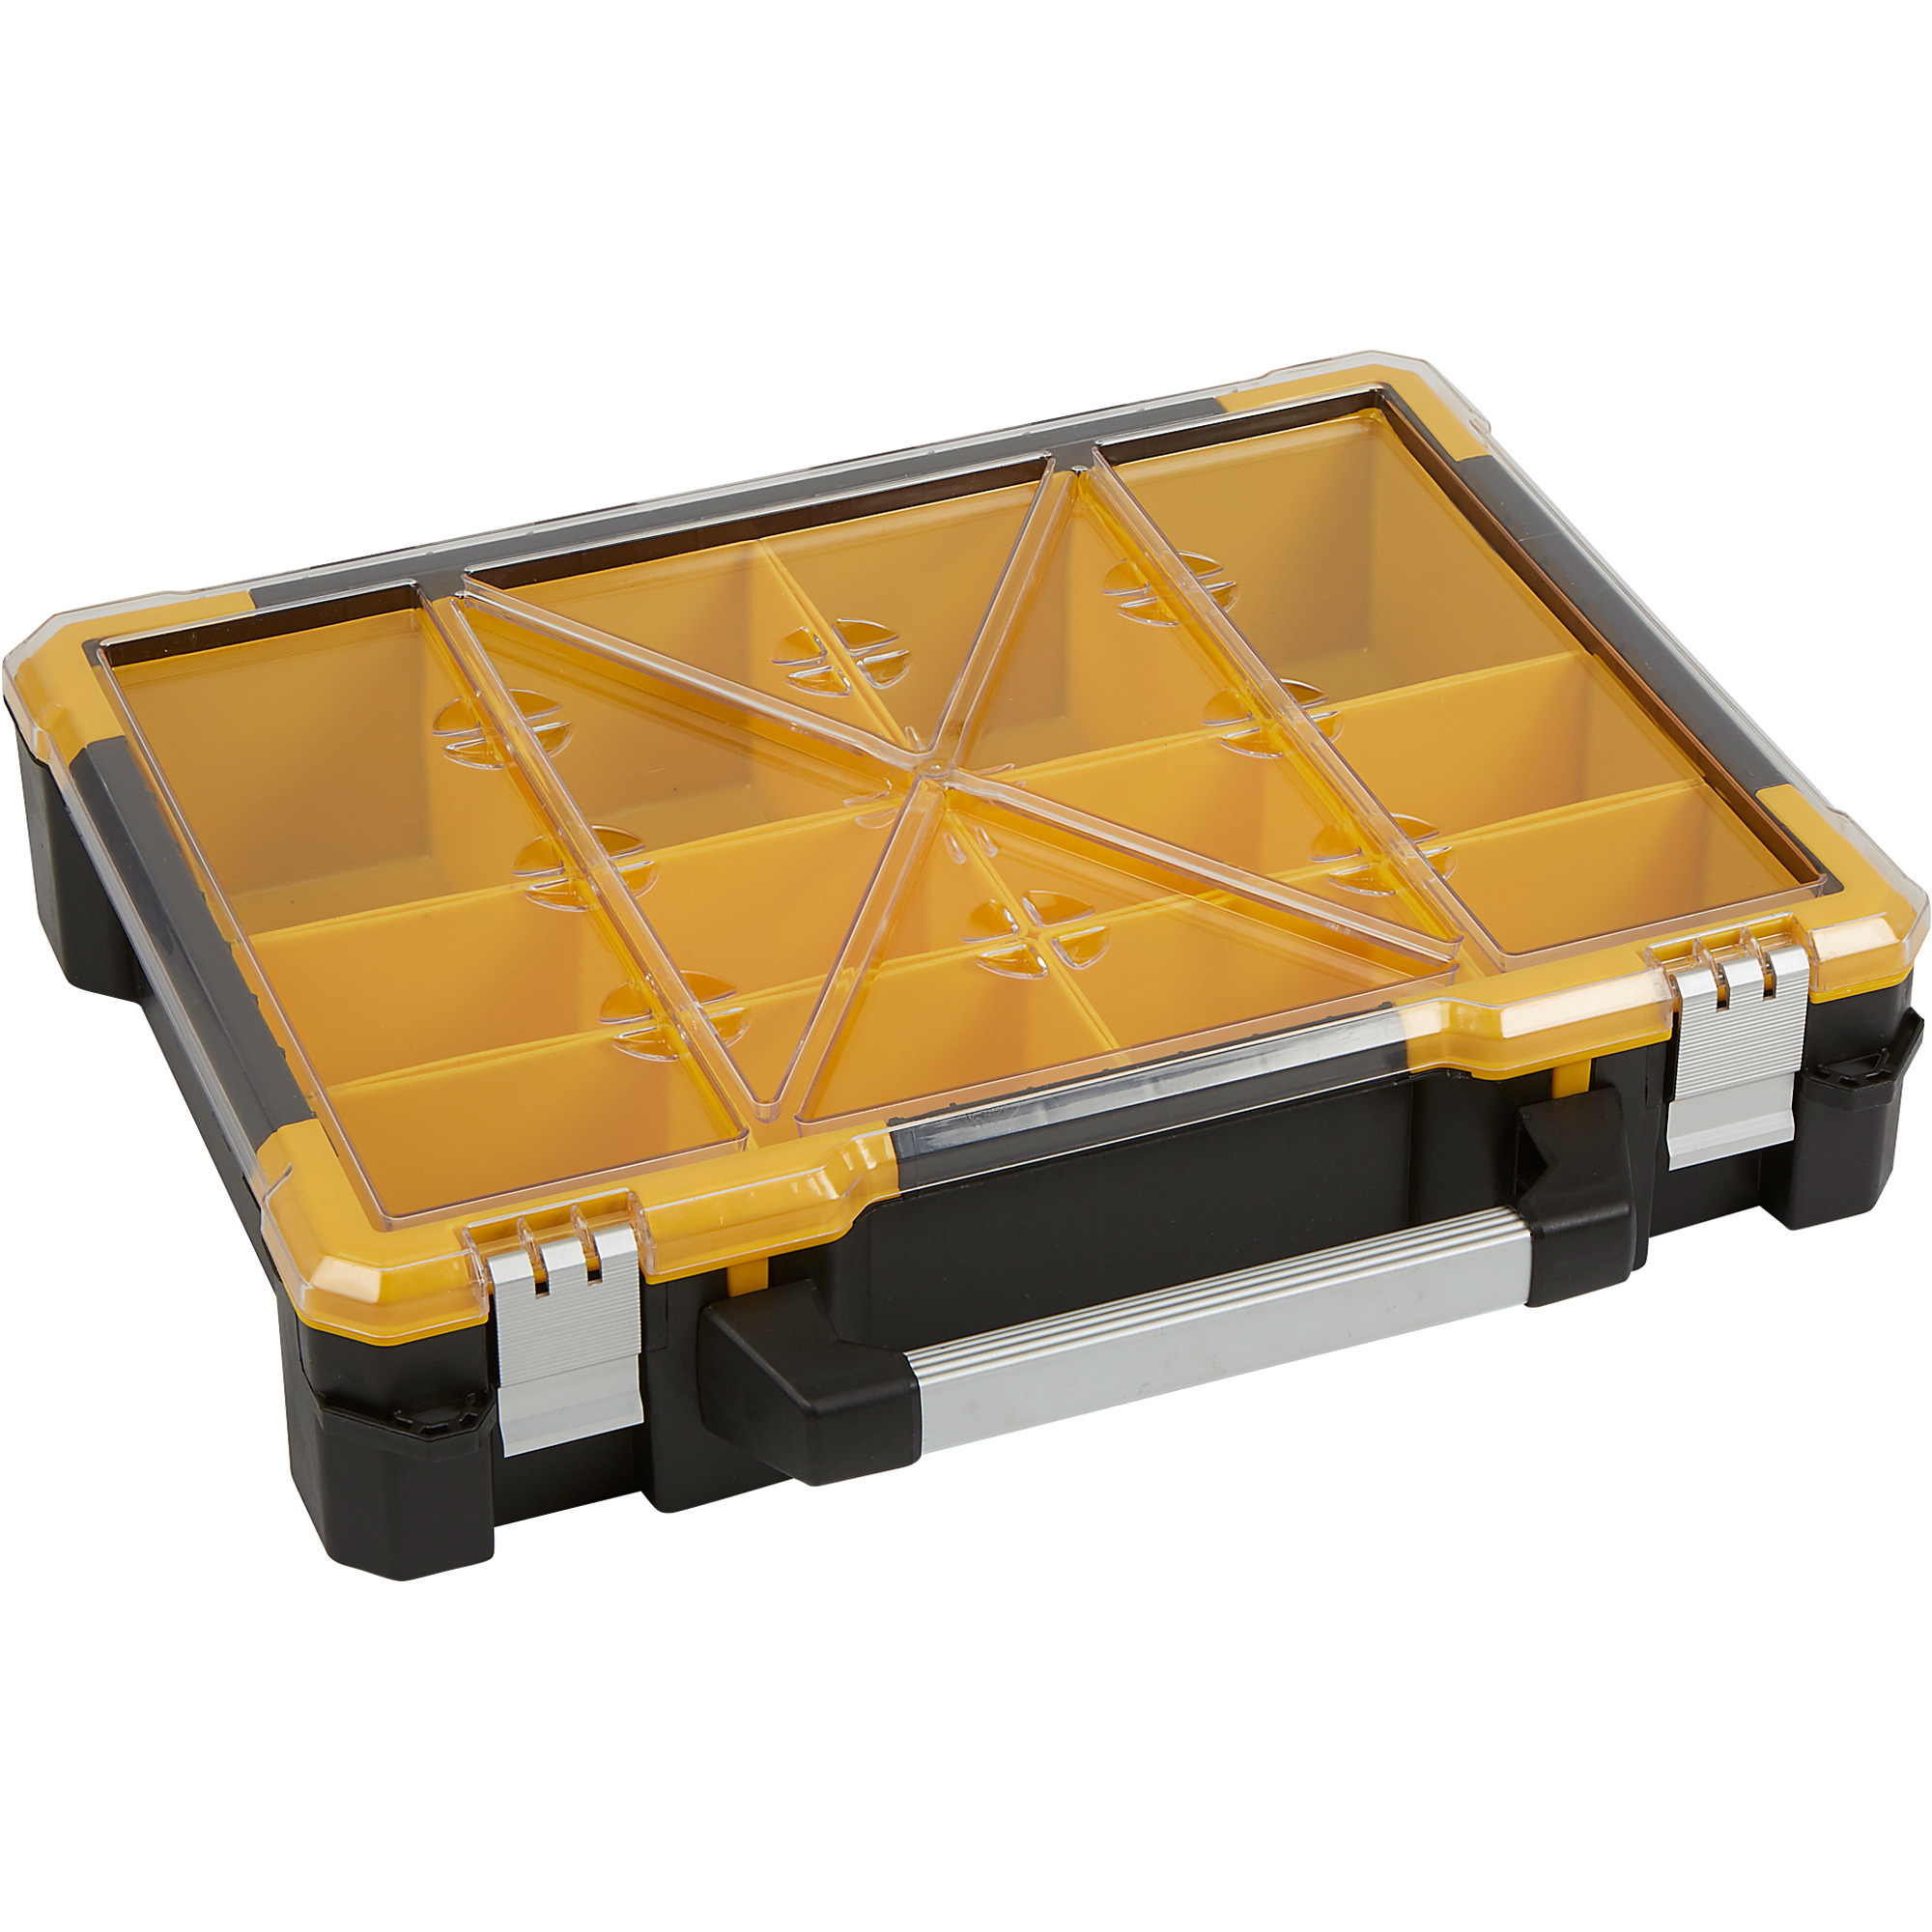 X-Space Plastic Storage Box With 12 Bins, 19 5/16Inch W x 16 1/2Inch D x 4 1/2Inch H